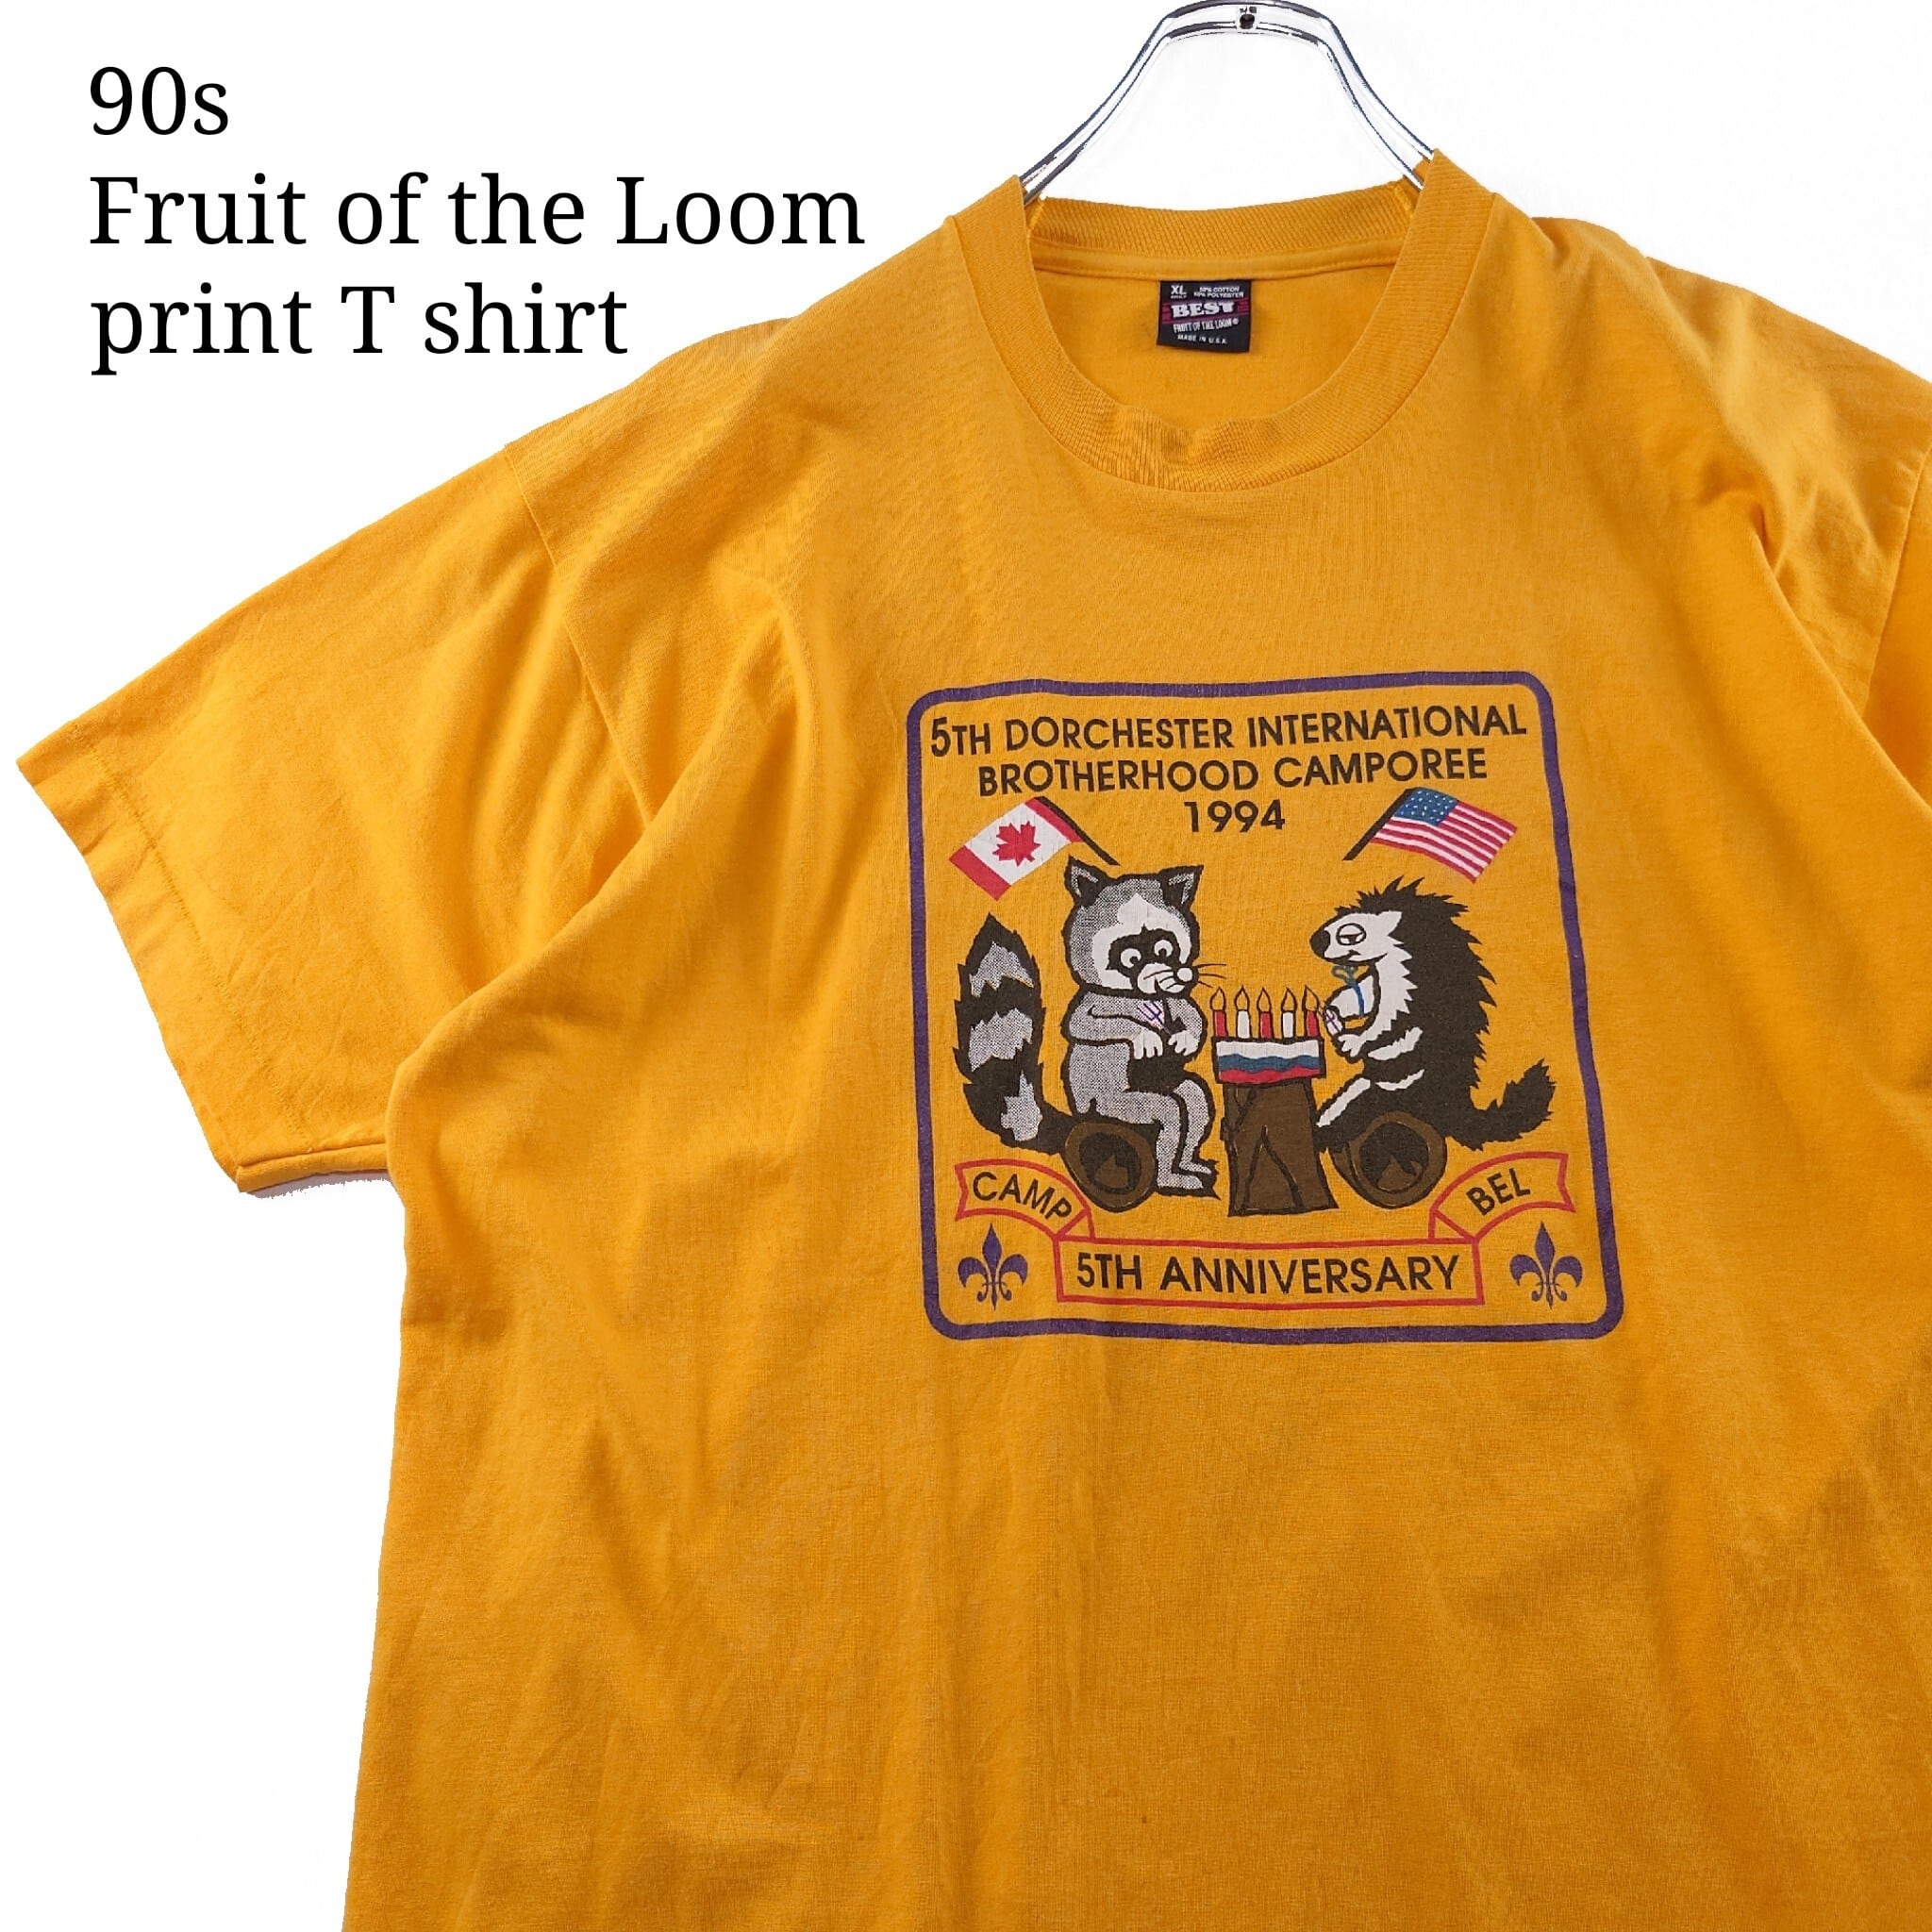 90年代 アメリカ製 ビンテージ リンガーTシャツ アニマル柄 プリント